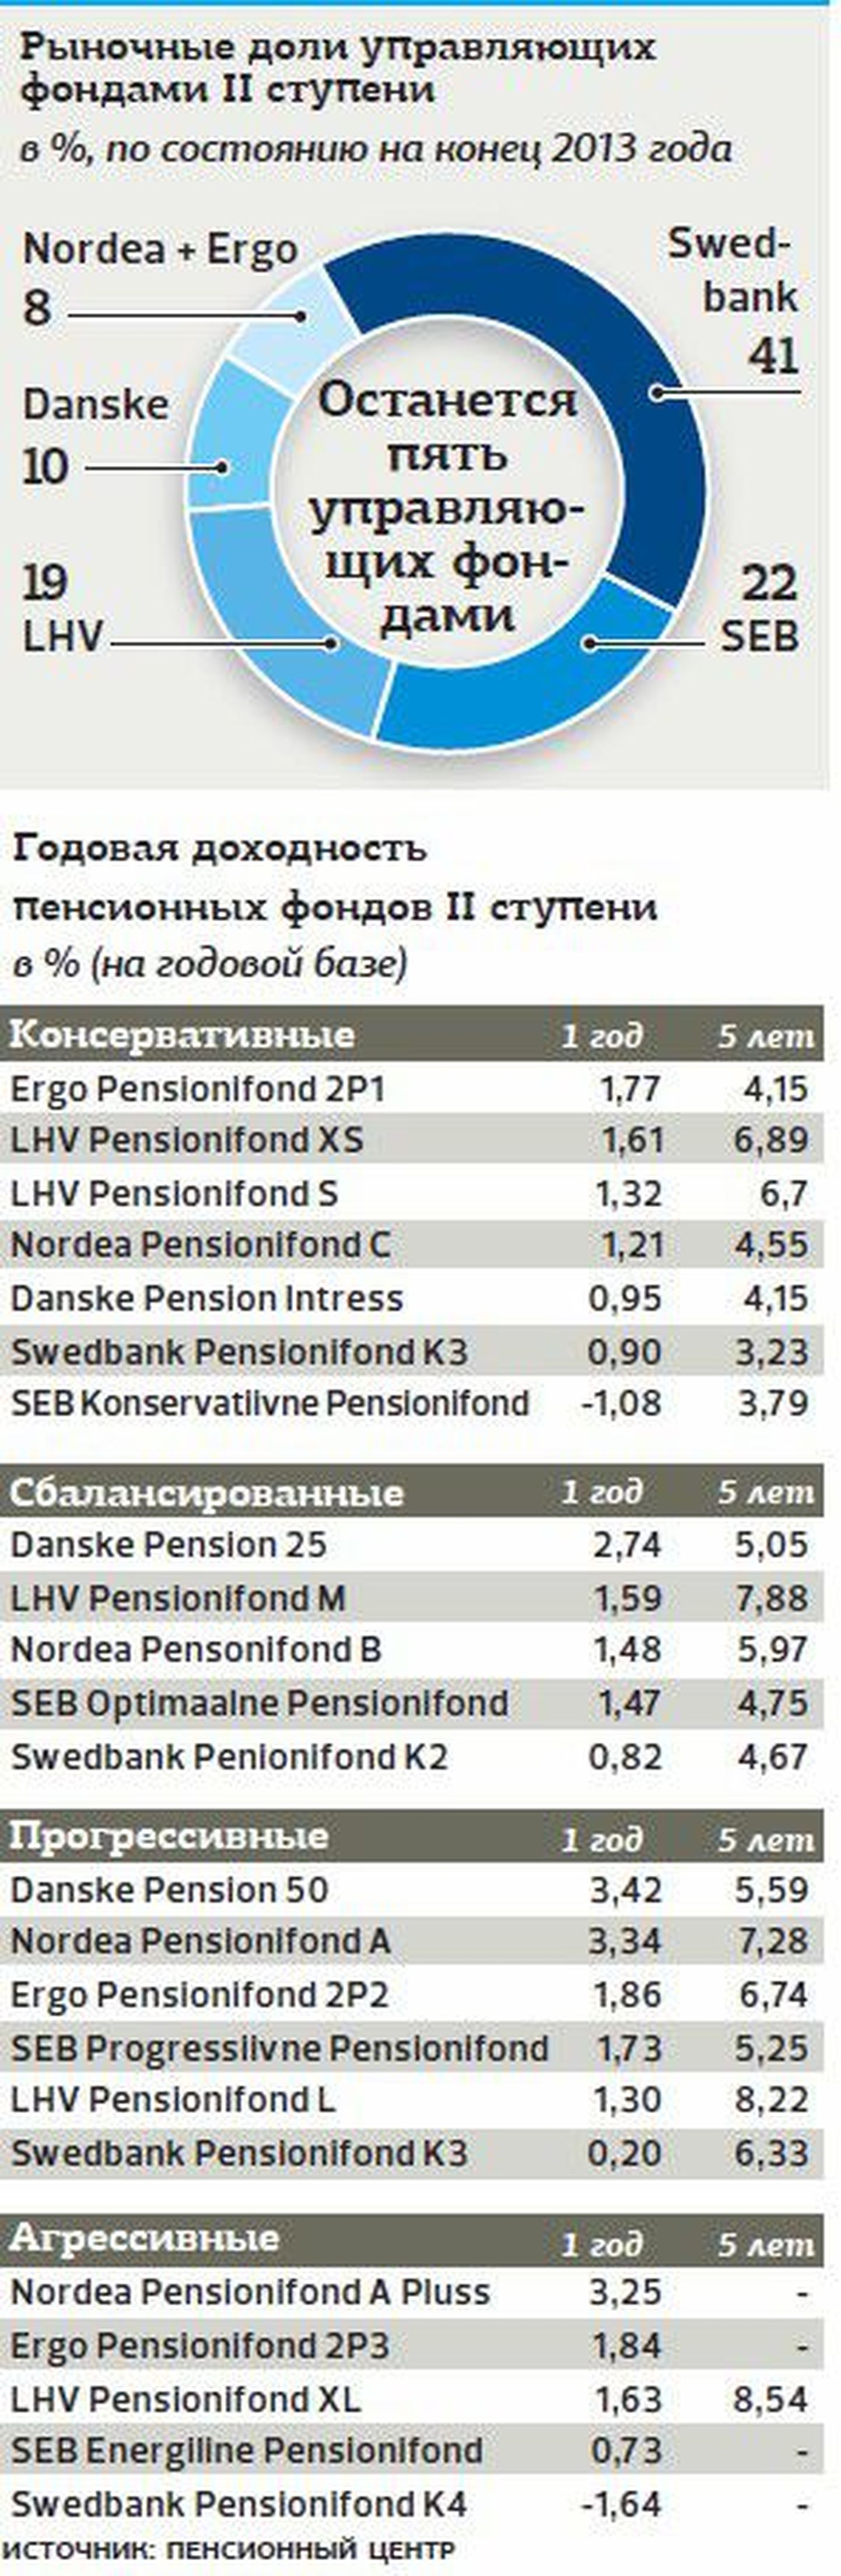 Осенью пенсионные фонды Ergo перейдут банку Nordea.